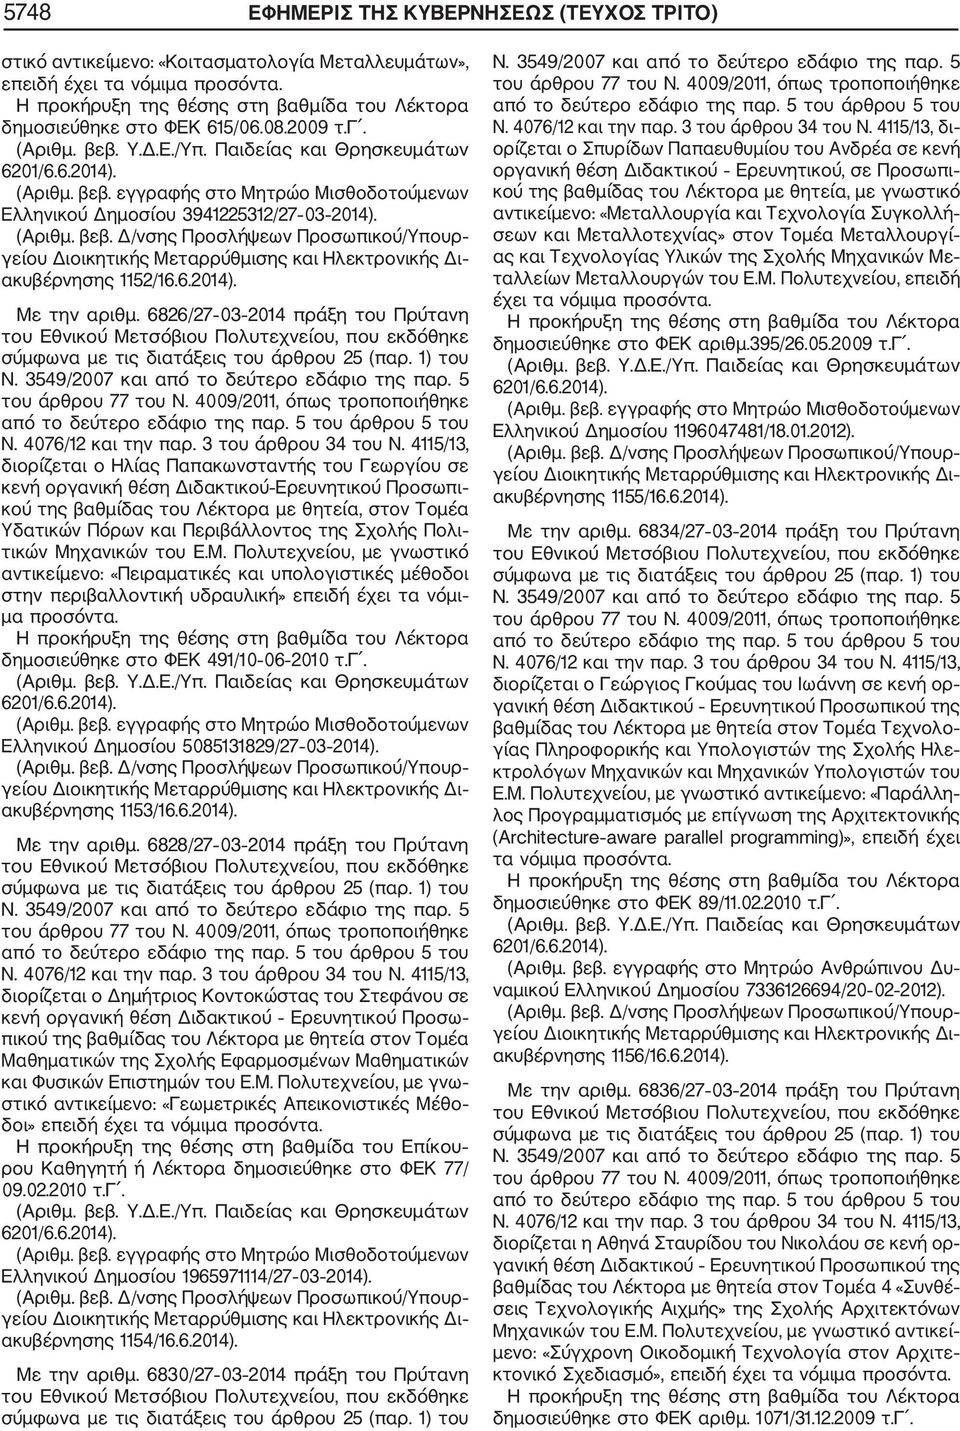 6826/27 03 2014 πράξη του Πρύτανη διορίζεται ο Ηλίας Παπακωνσταντής του Γεωργίου σε κενή οργανική θέση Διδακτικού Ερευνητικού Προσωπι κού της βαθμίδας του Λέκτορα με θητεία, στον Τομέα Υδατικών Πόρων